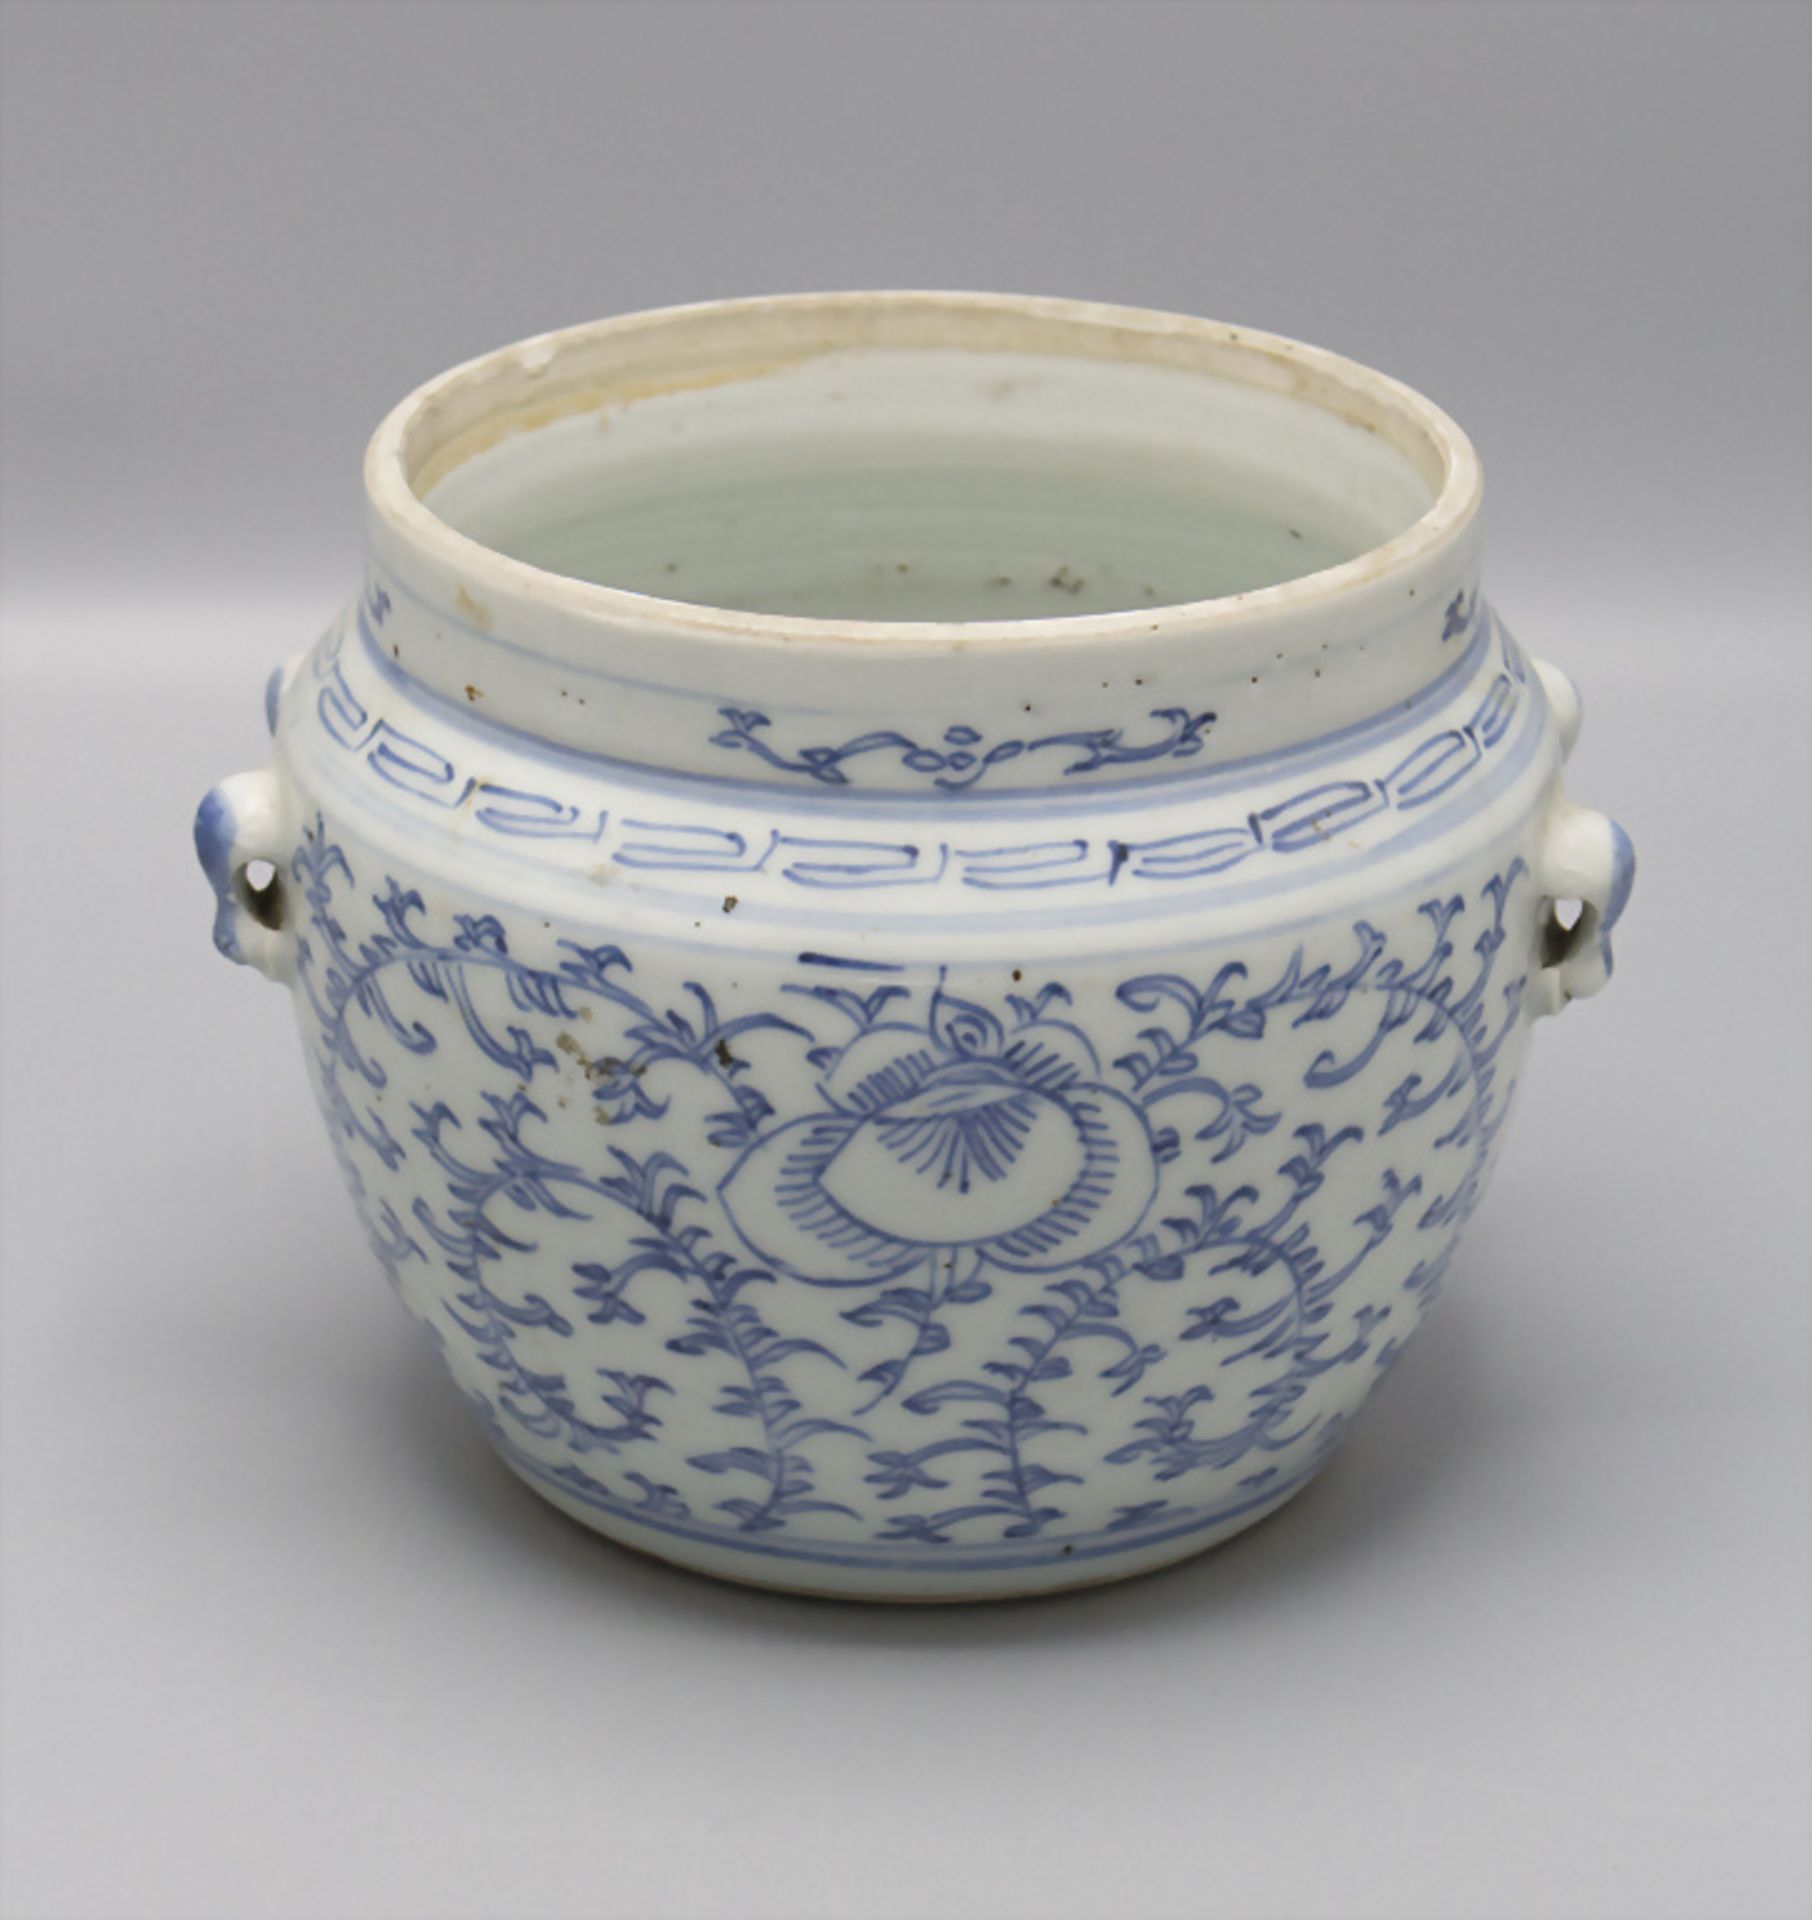 Porzellan Ingwertopf / A porcelain ginger pot, China - Image 5 of 6